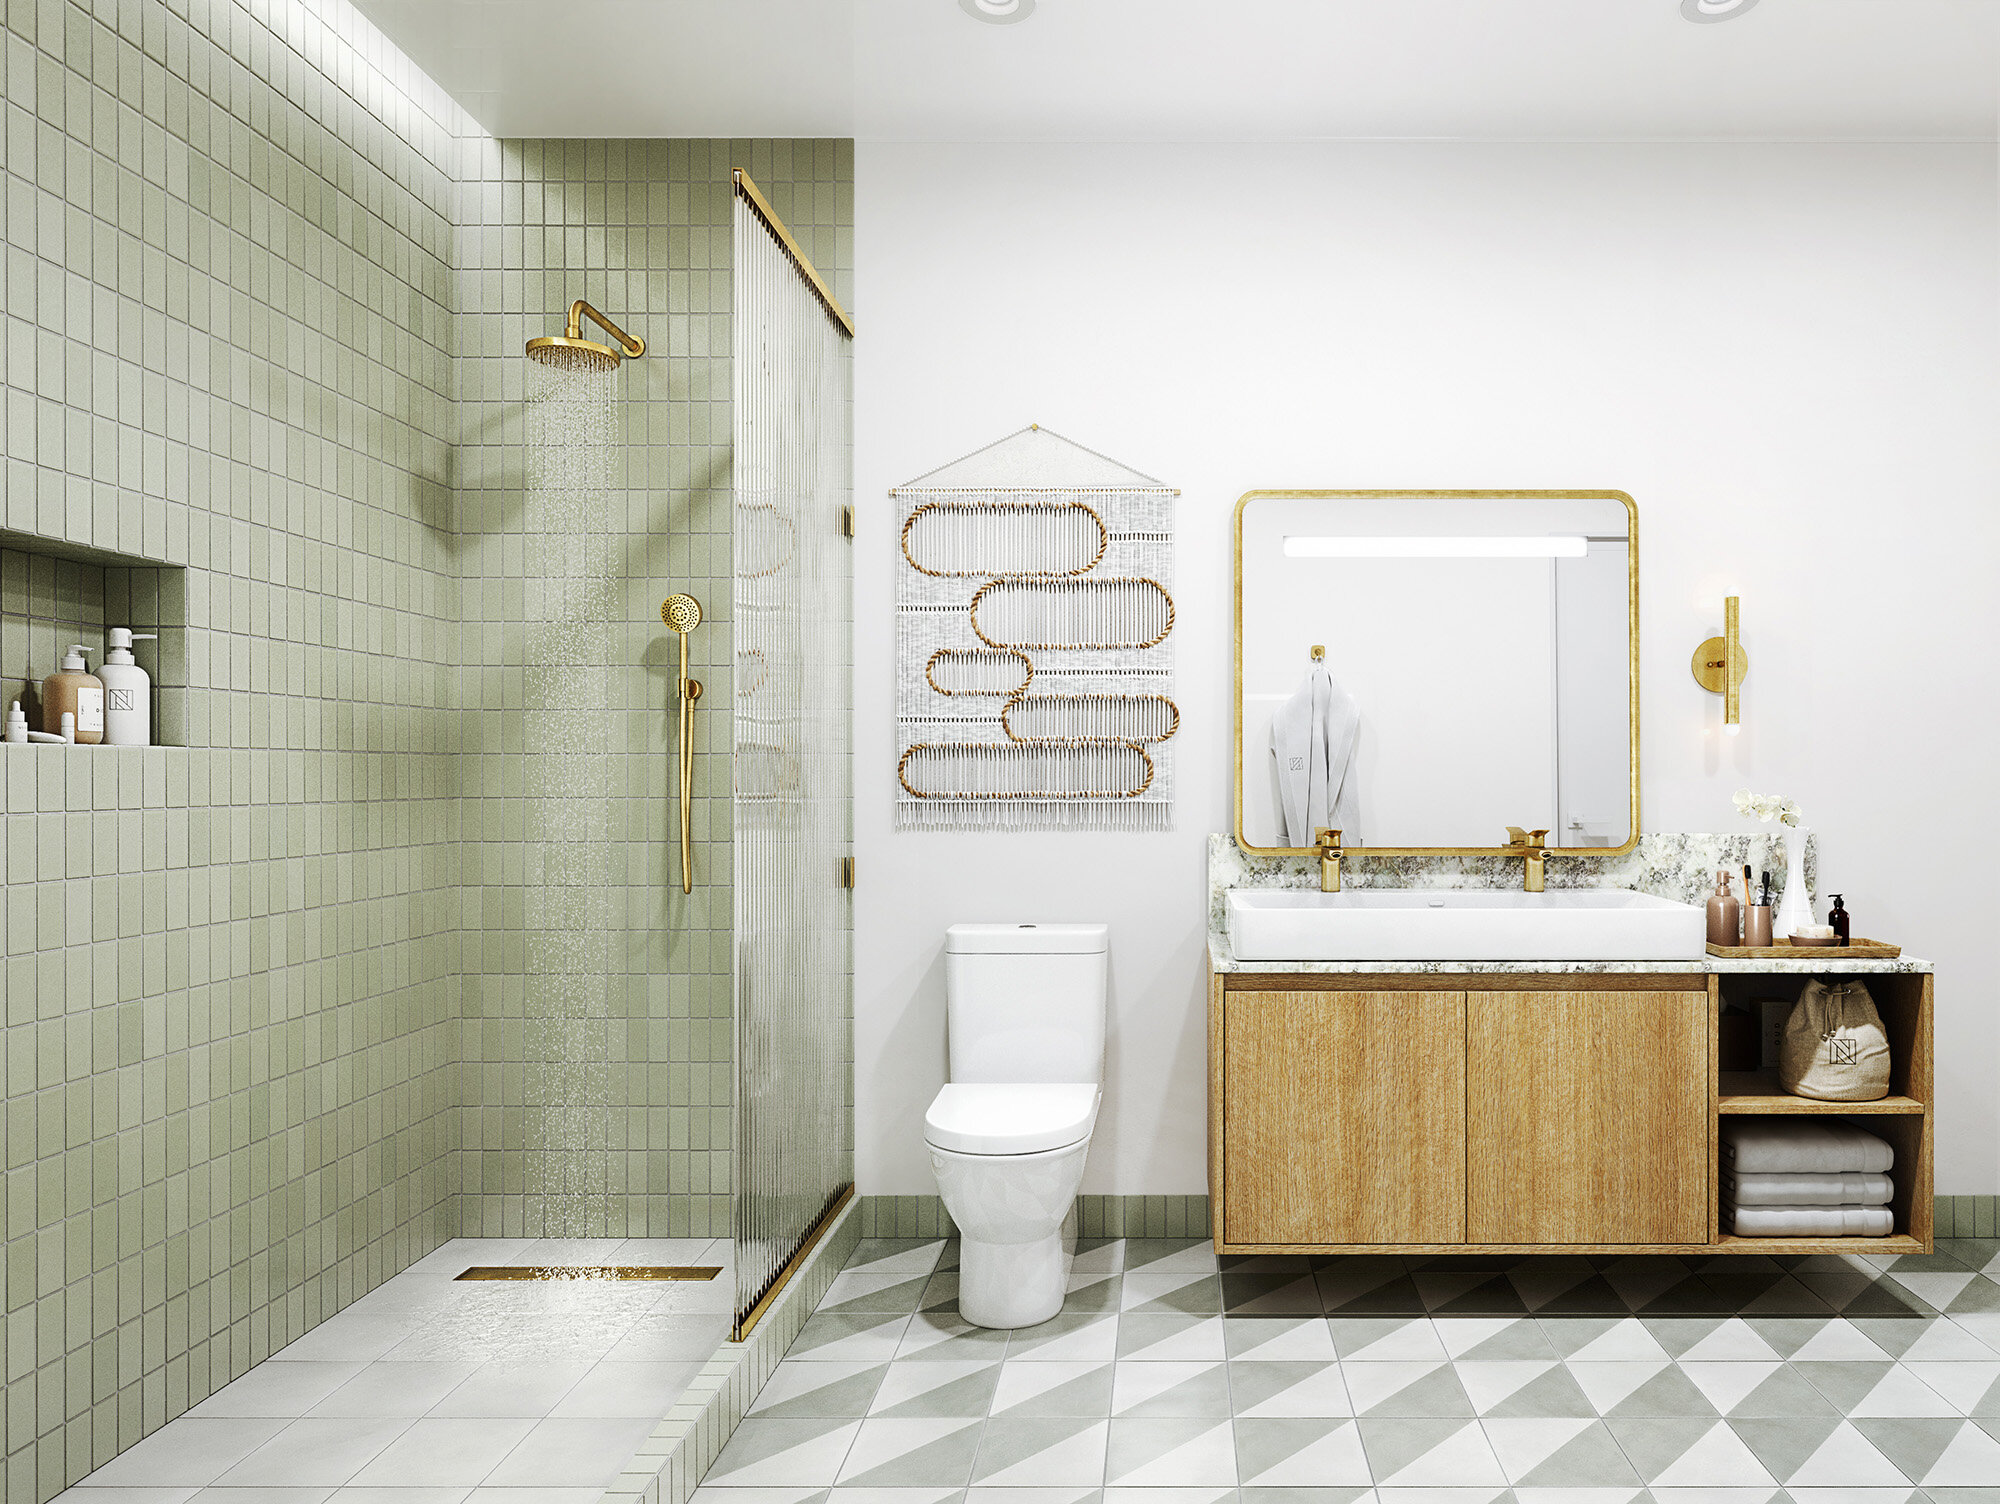  Sales Center Bathroom - 3D Rendering by Azeez Bakare Studios 